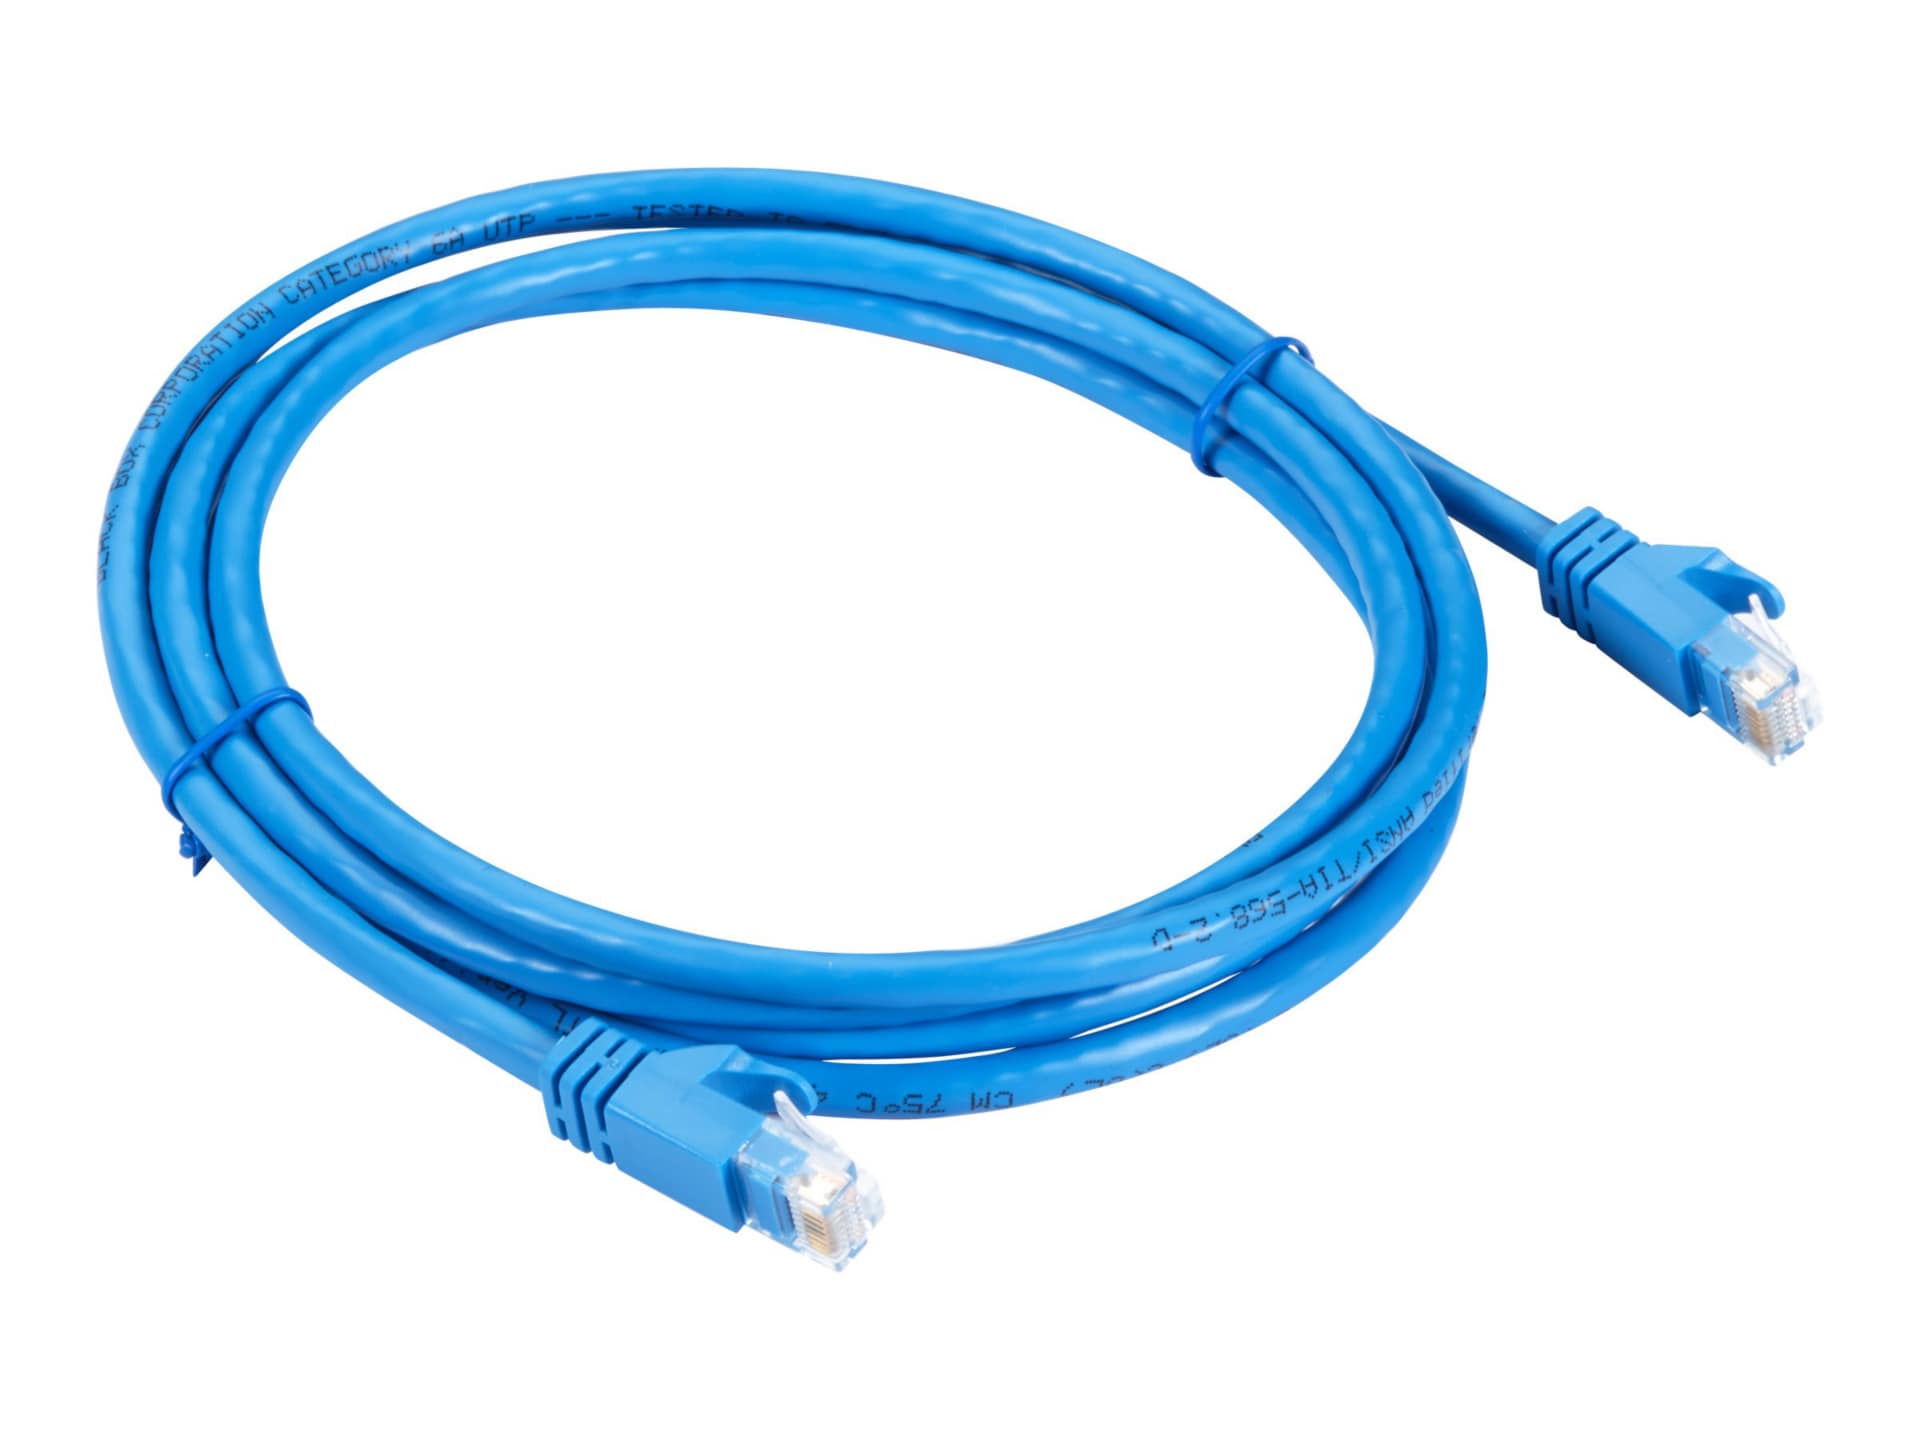 Black Box GigaTrue patch cable - 7 ft - blue